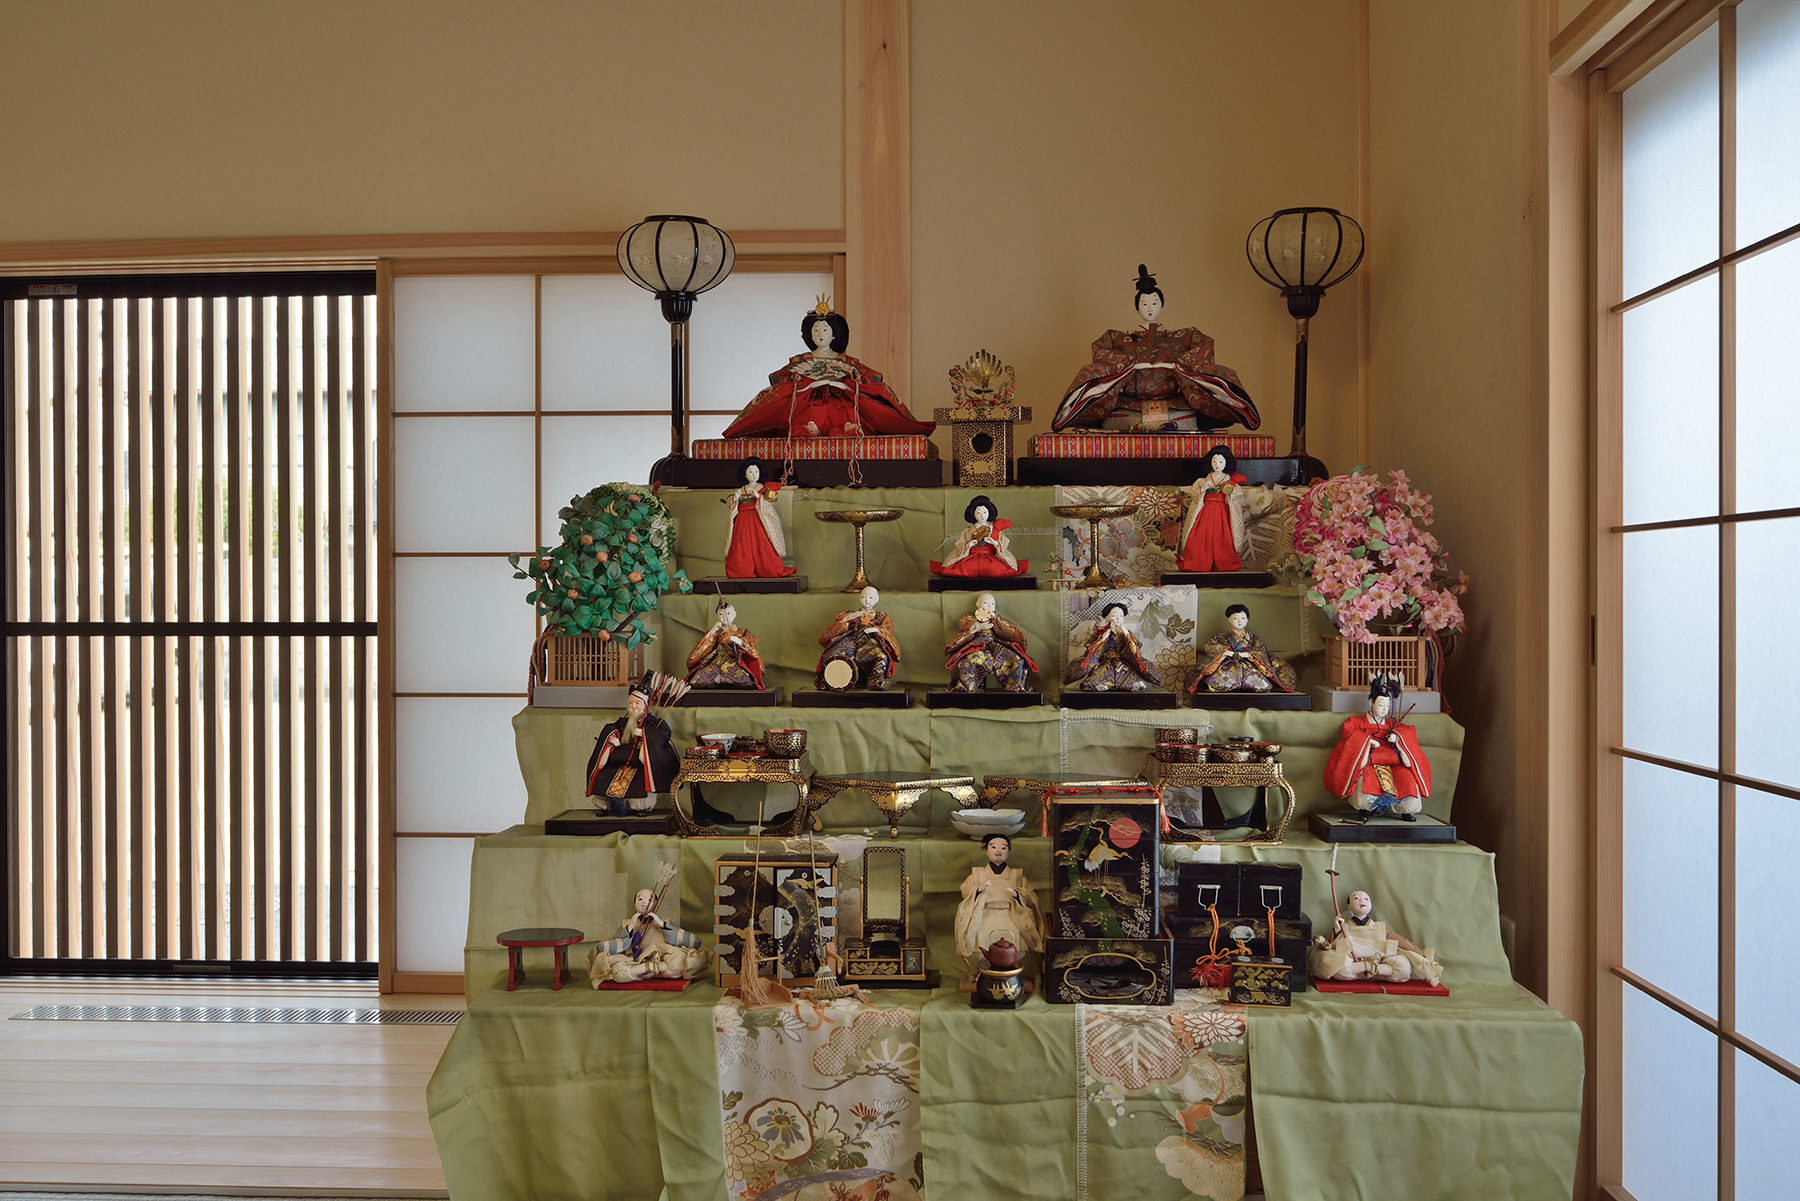 奈良市「2階リビングキッチンに家族が集う家」